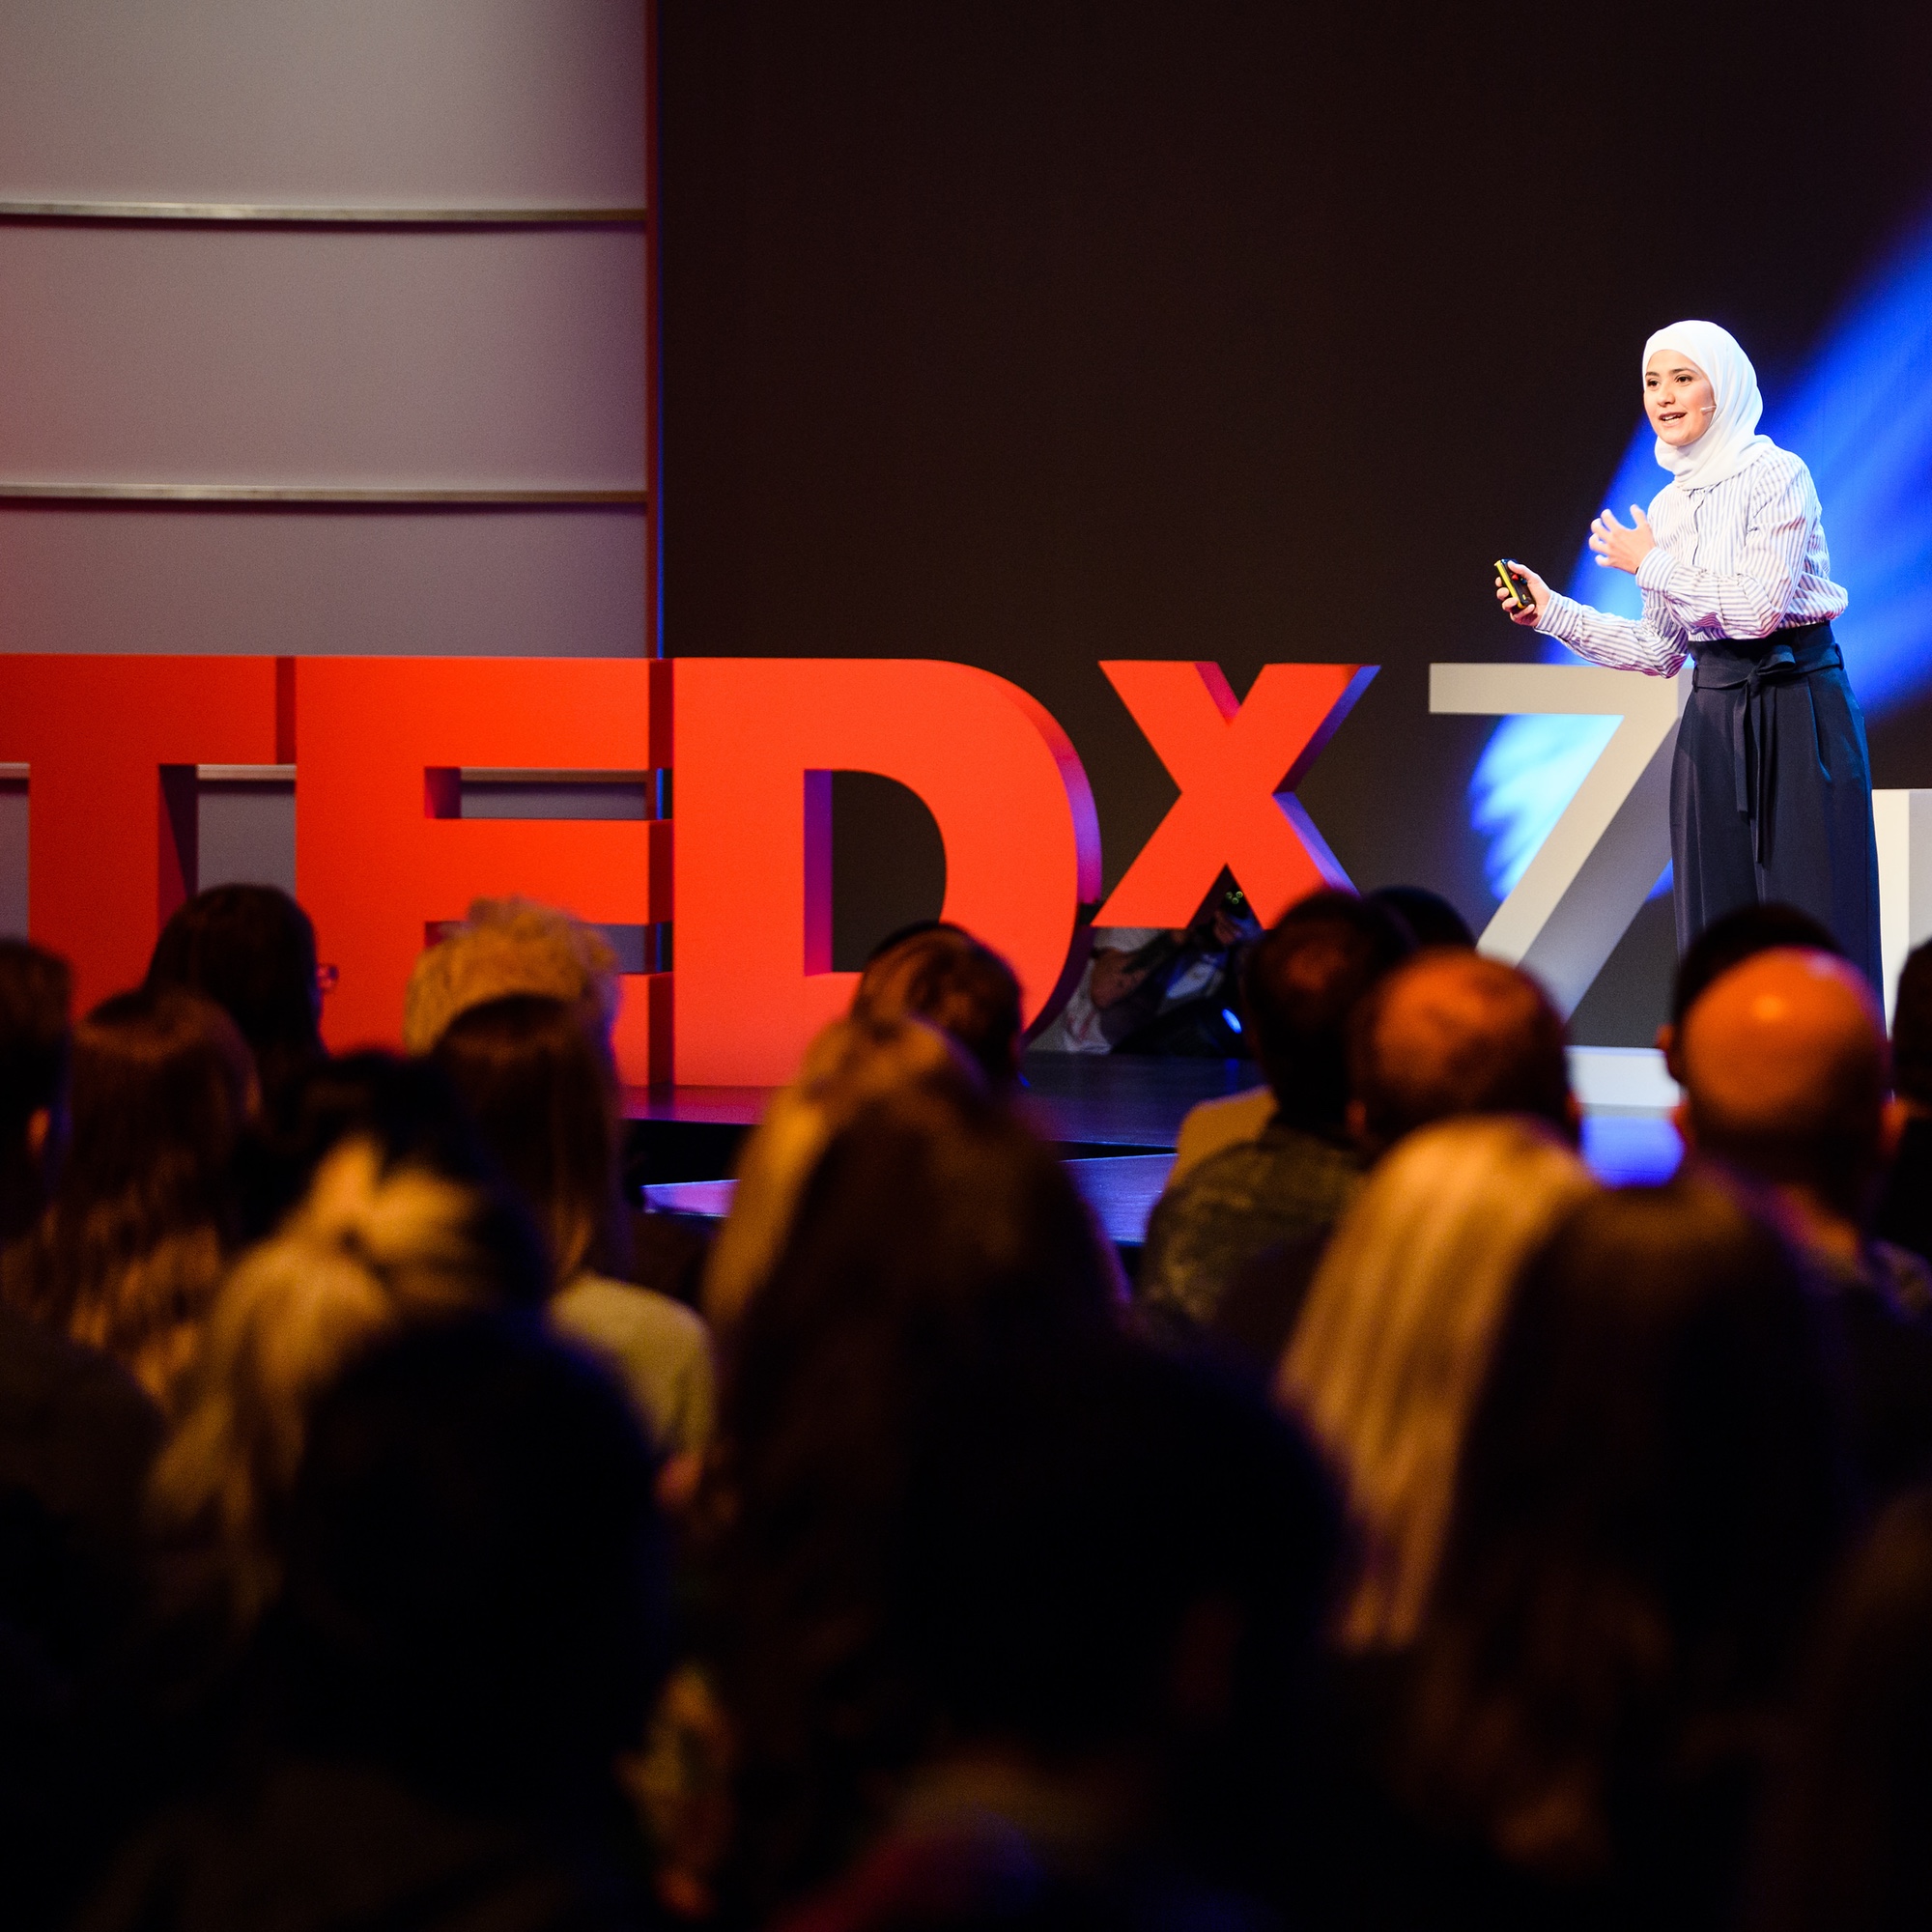 Foto: Auftritt von Rima Alaifari bei TEDxZurich 2017